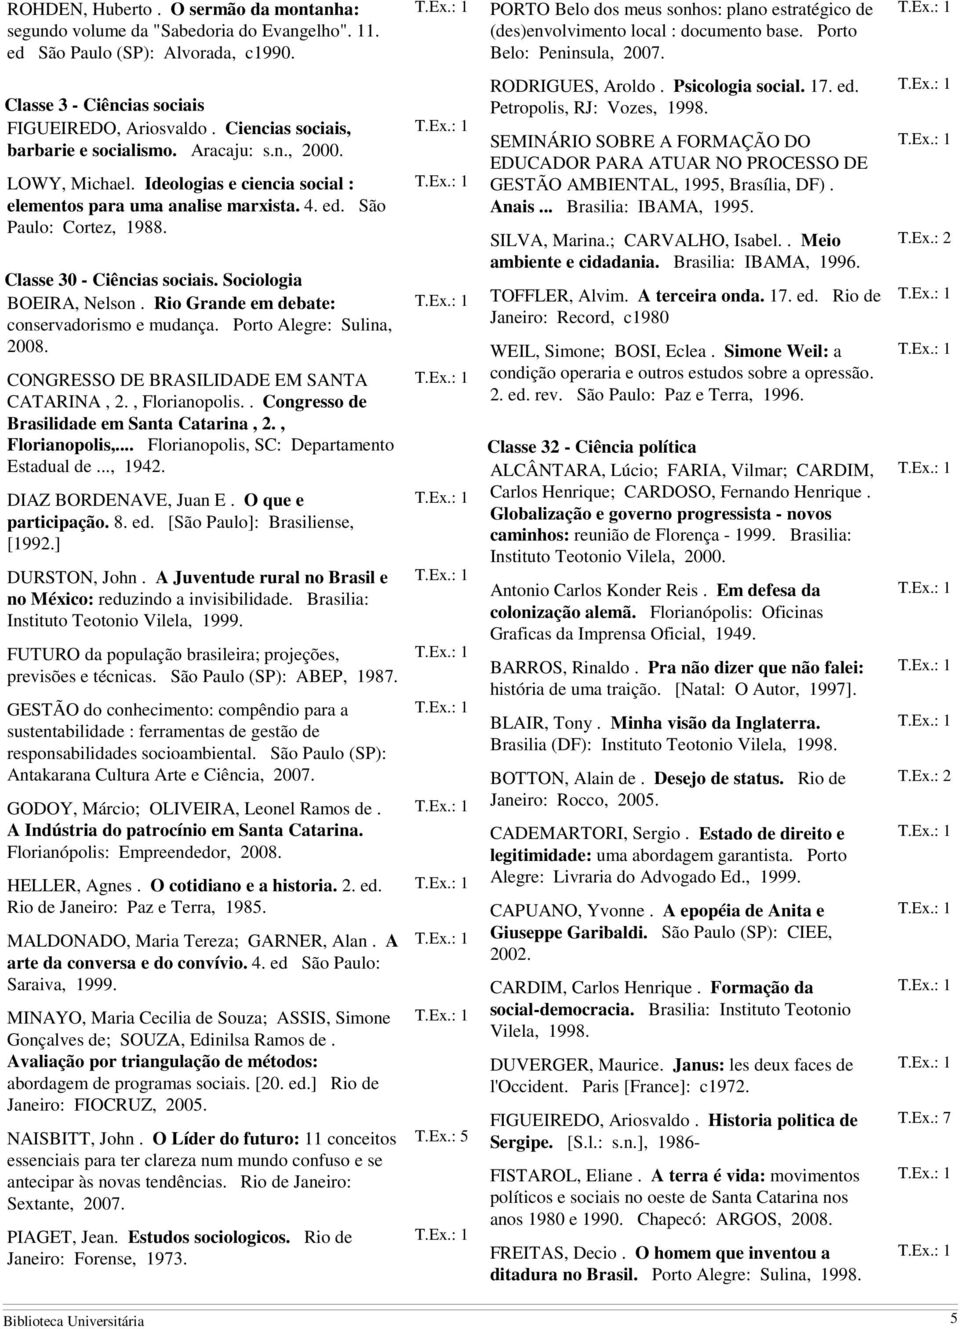 Ciencias sociais, barbarie e socialismo. Aracaju: s.n., 2000. LOWY, Michael. Ideologias e ciencia social : elementos para uma analise marxista. 4. ed. São Paulo: Cortez, 1988.